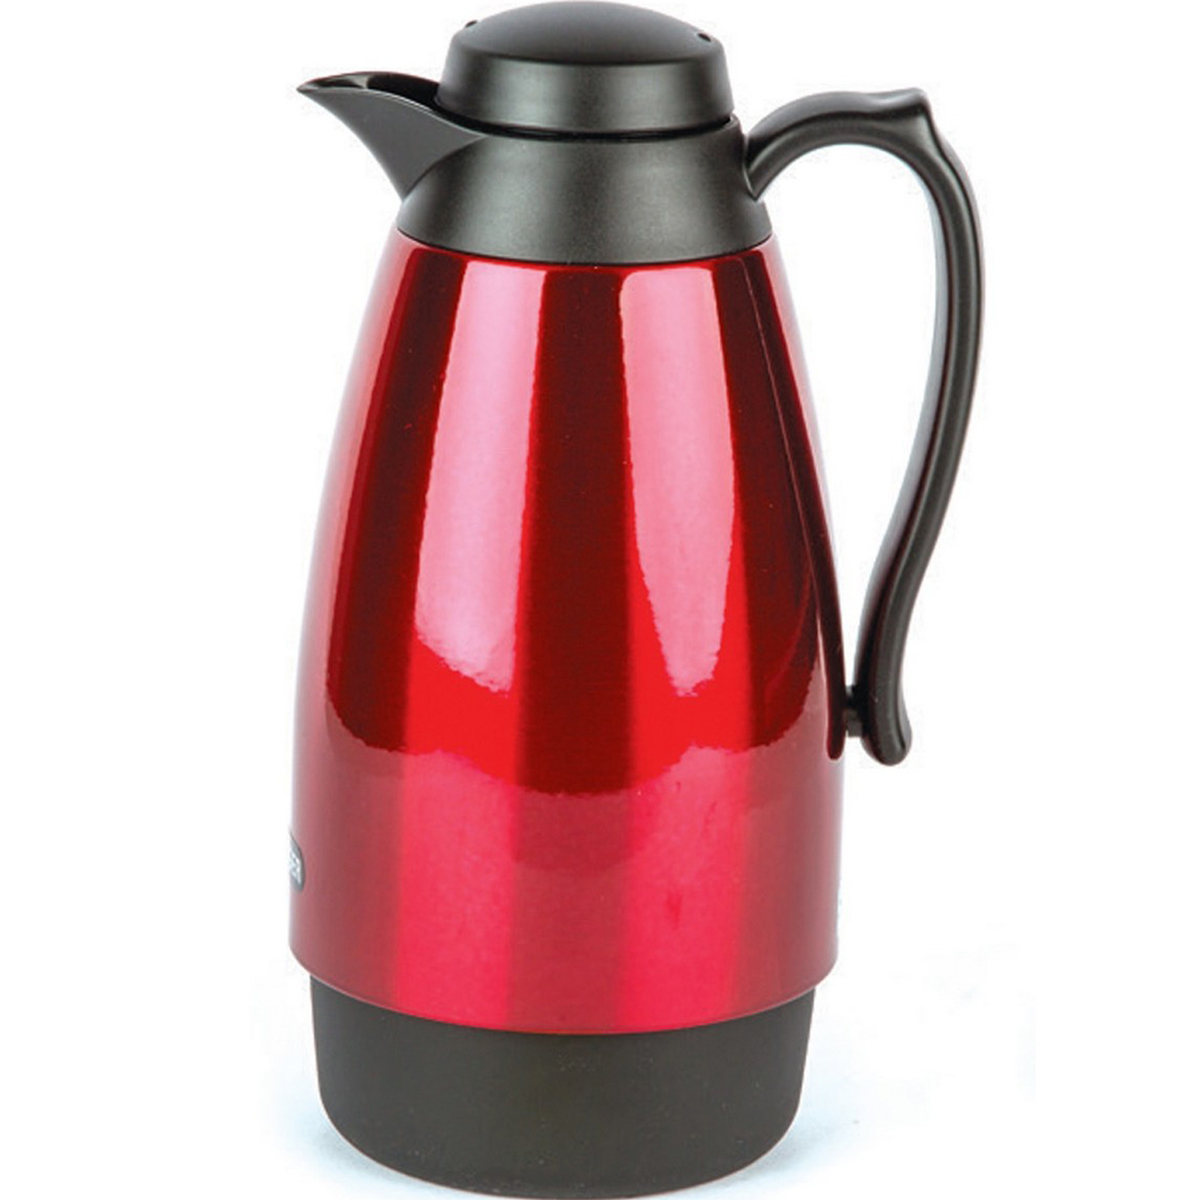 Tiger Vacuum Flask Handy Jug Red 1Ltr Online at Best Price | Flasks ...